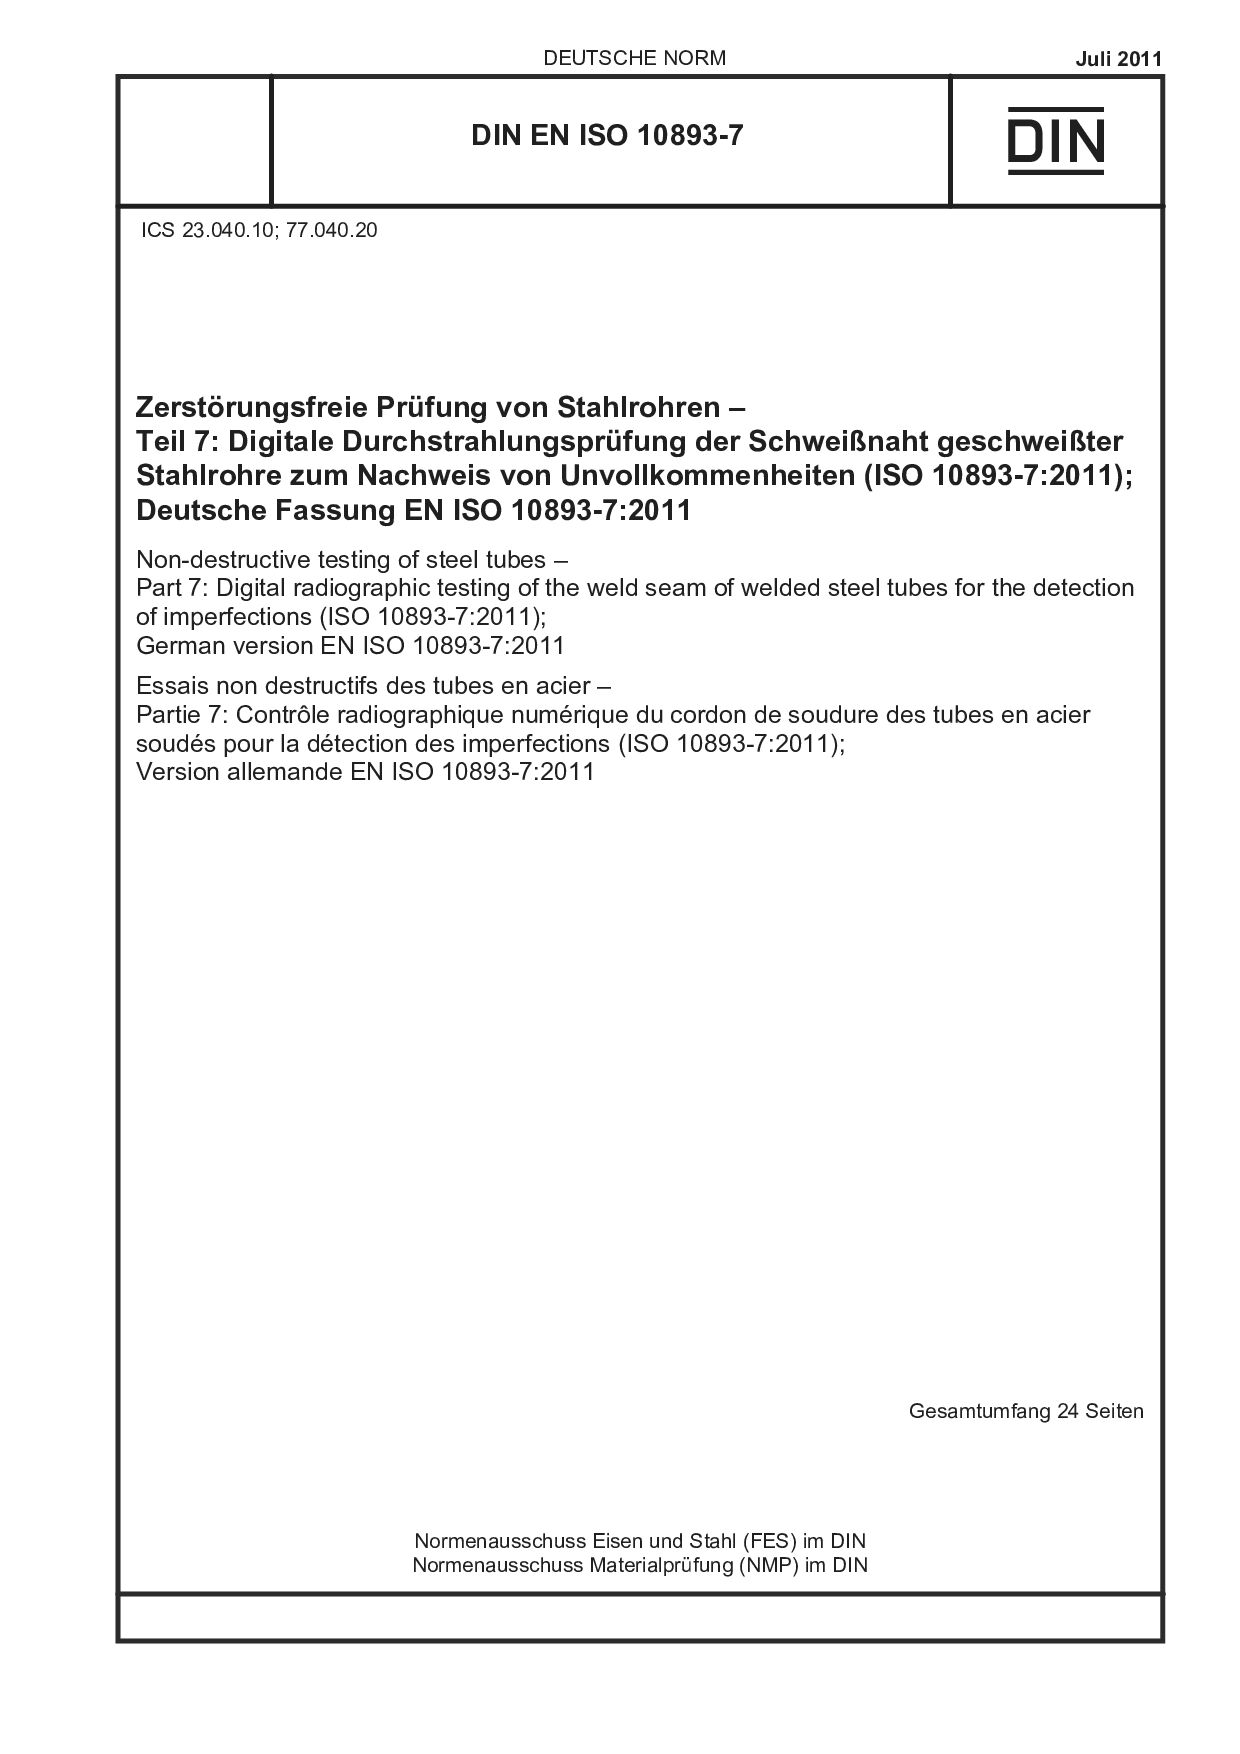 DIN EN ISO 10893-7:2011封面图